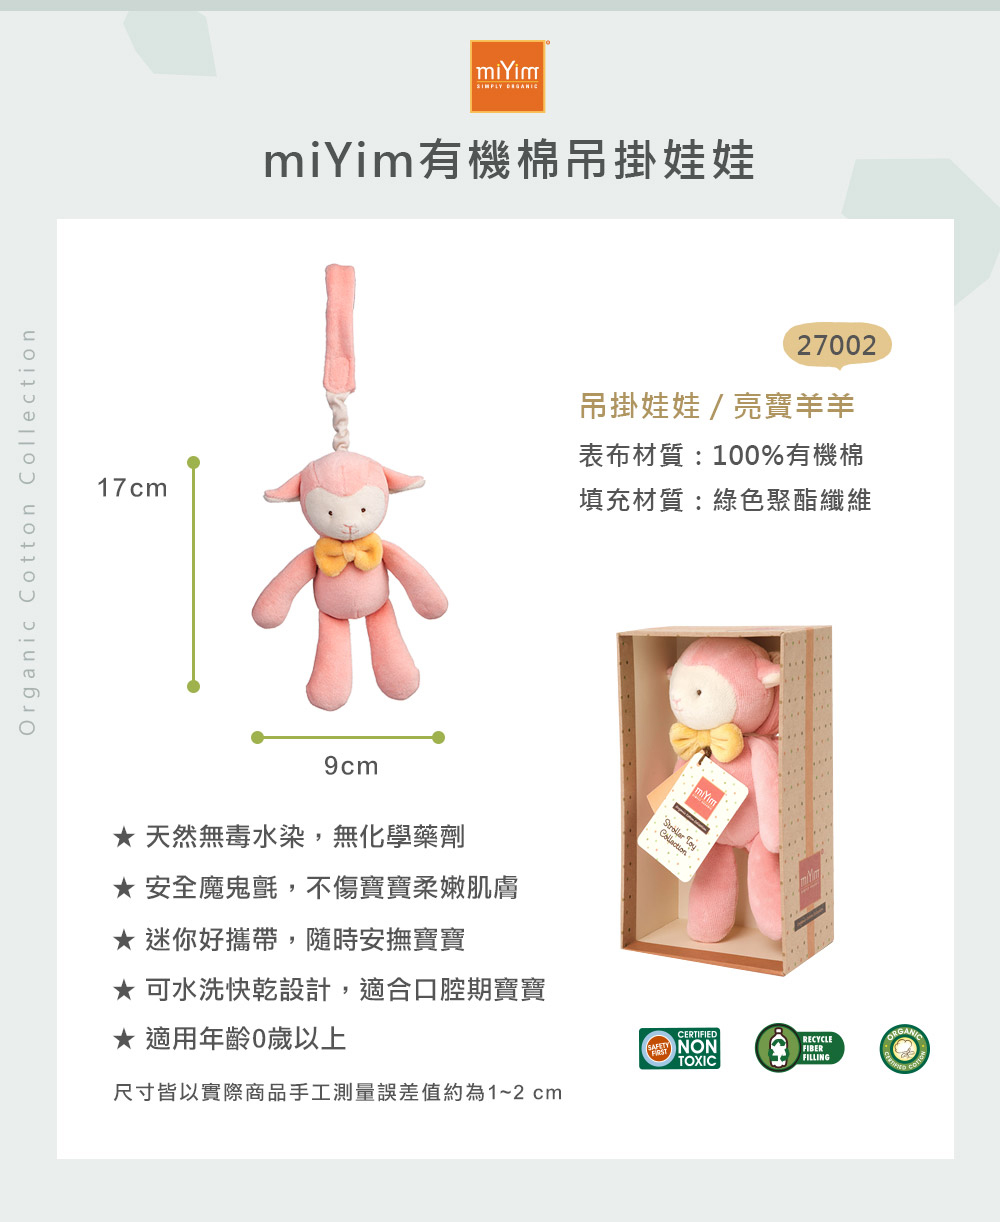 miYim有機棉吊掛娃娃 亮寶羊羊 尺寸規格